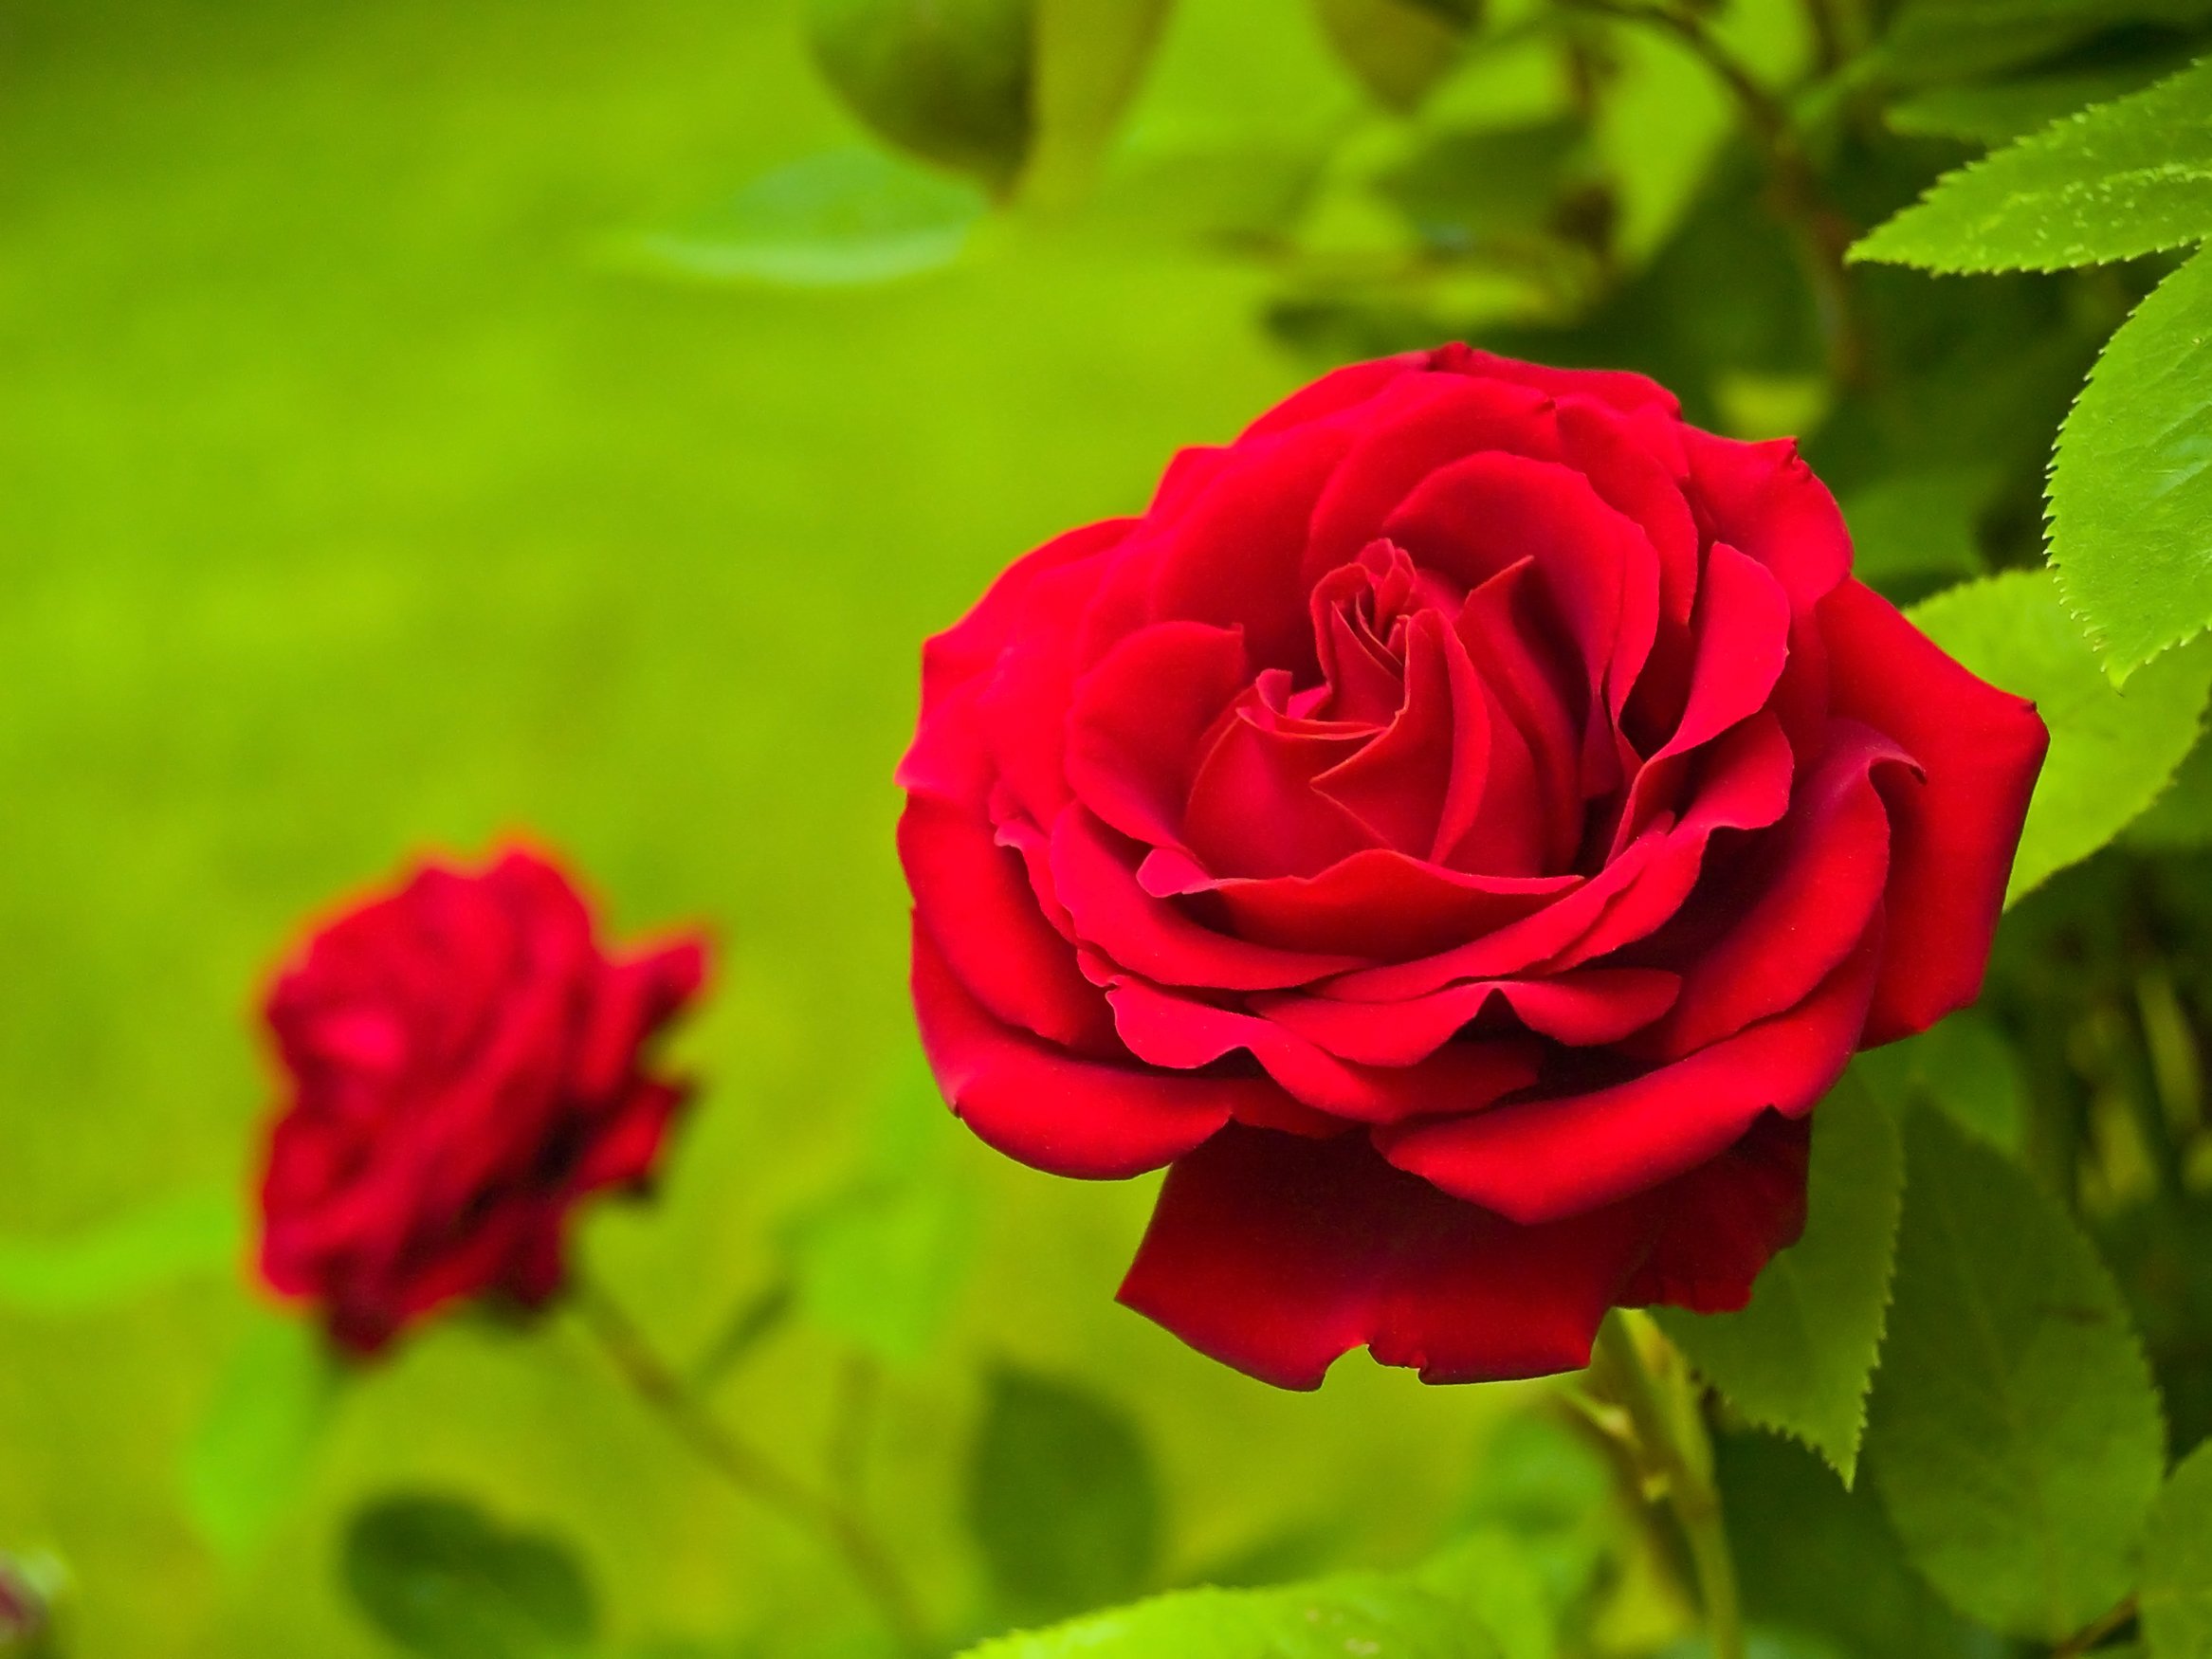 National flower of Czech Republic - Rose